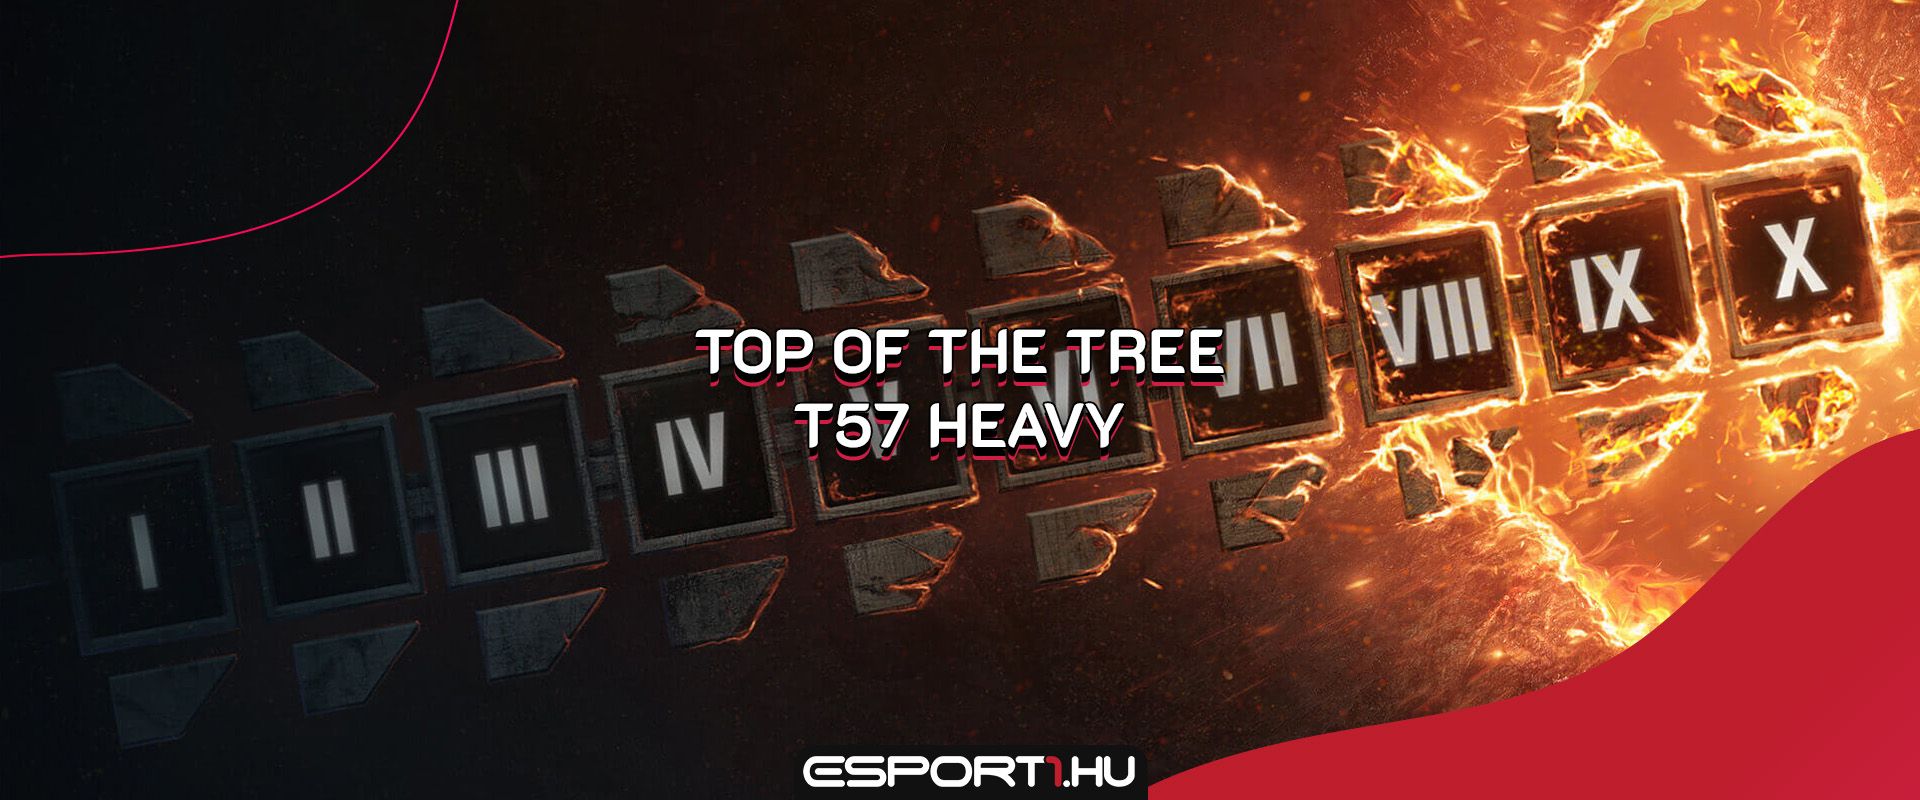 Júliusi Top of the Tree: Célkeresztben a T57 Heavy